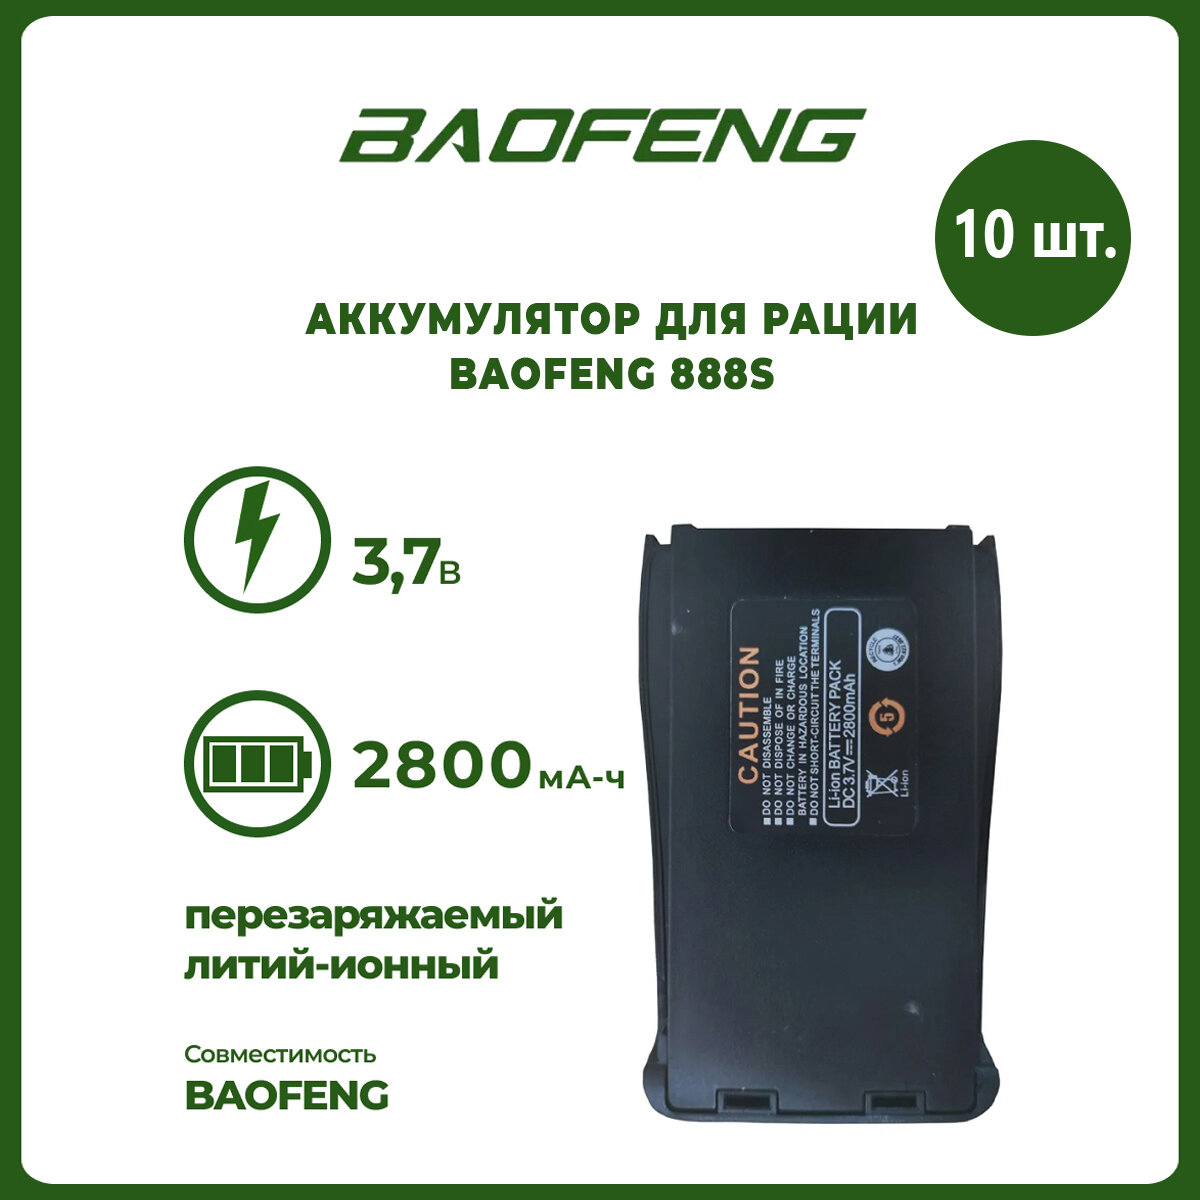 Аккумулятор для рации Baofeng 888S 2800 mAh комплект 10 шт